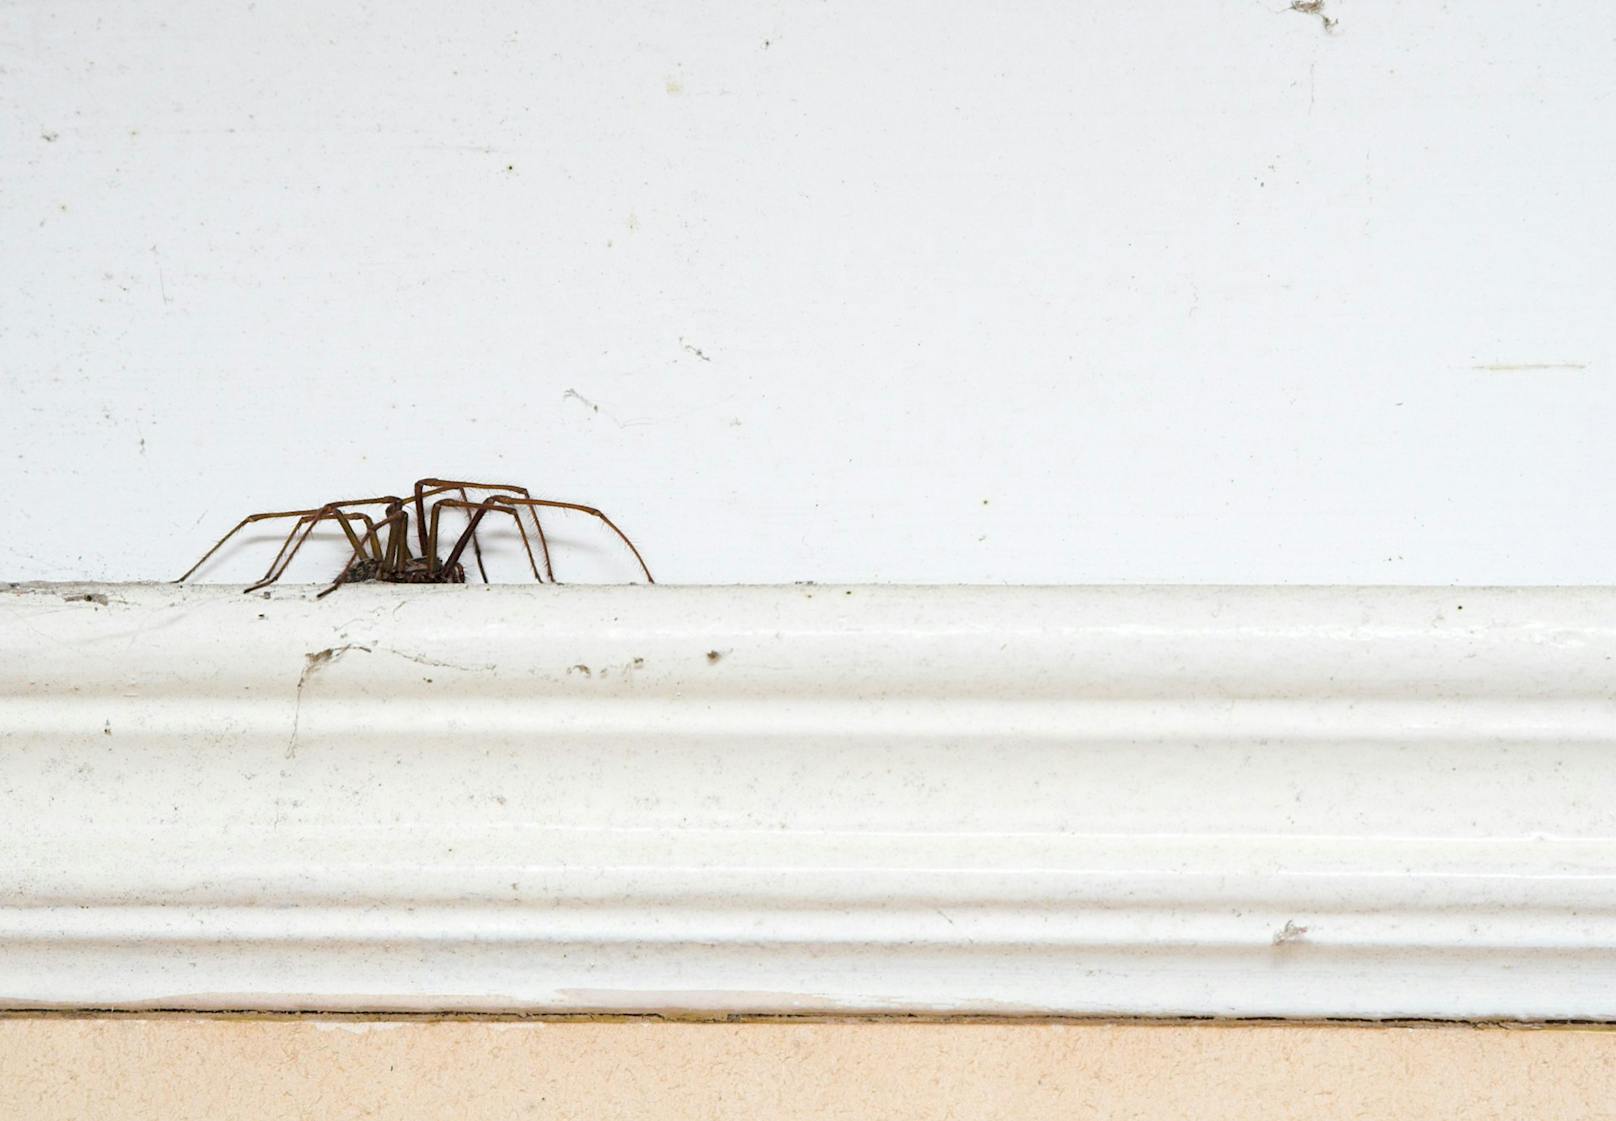 <strong>Moral und Ethik:</strong> Viele Tierschützer haben auch Angst vor Spinnen, leben aber ihre Prinzipien - keinem Tier absichtlich zu schaden - so konsequent, dass sie auch die unangenehmen Begegnungen "retten" werden. Und siehe da? Mit jedem Glas, dass eine Spinne sicher in den Garten transportiert, wird die Angst kleiner.&nbsp;